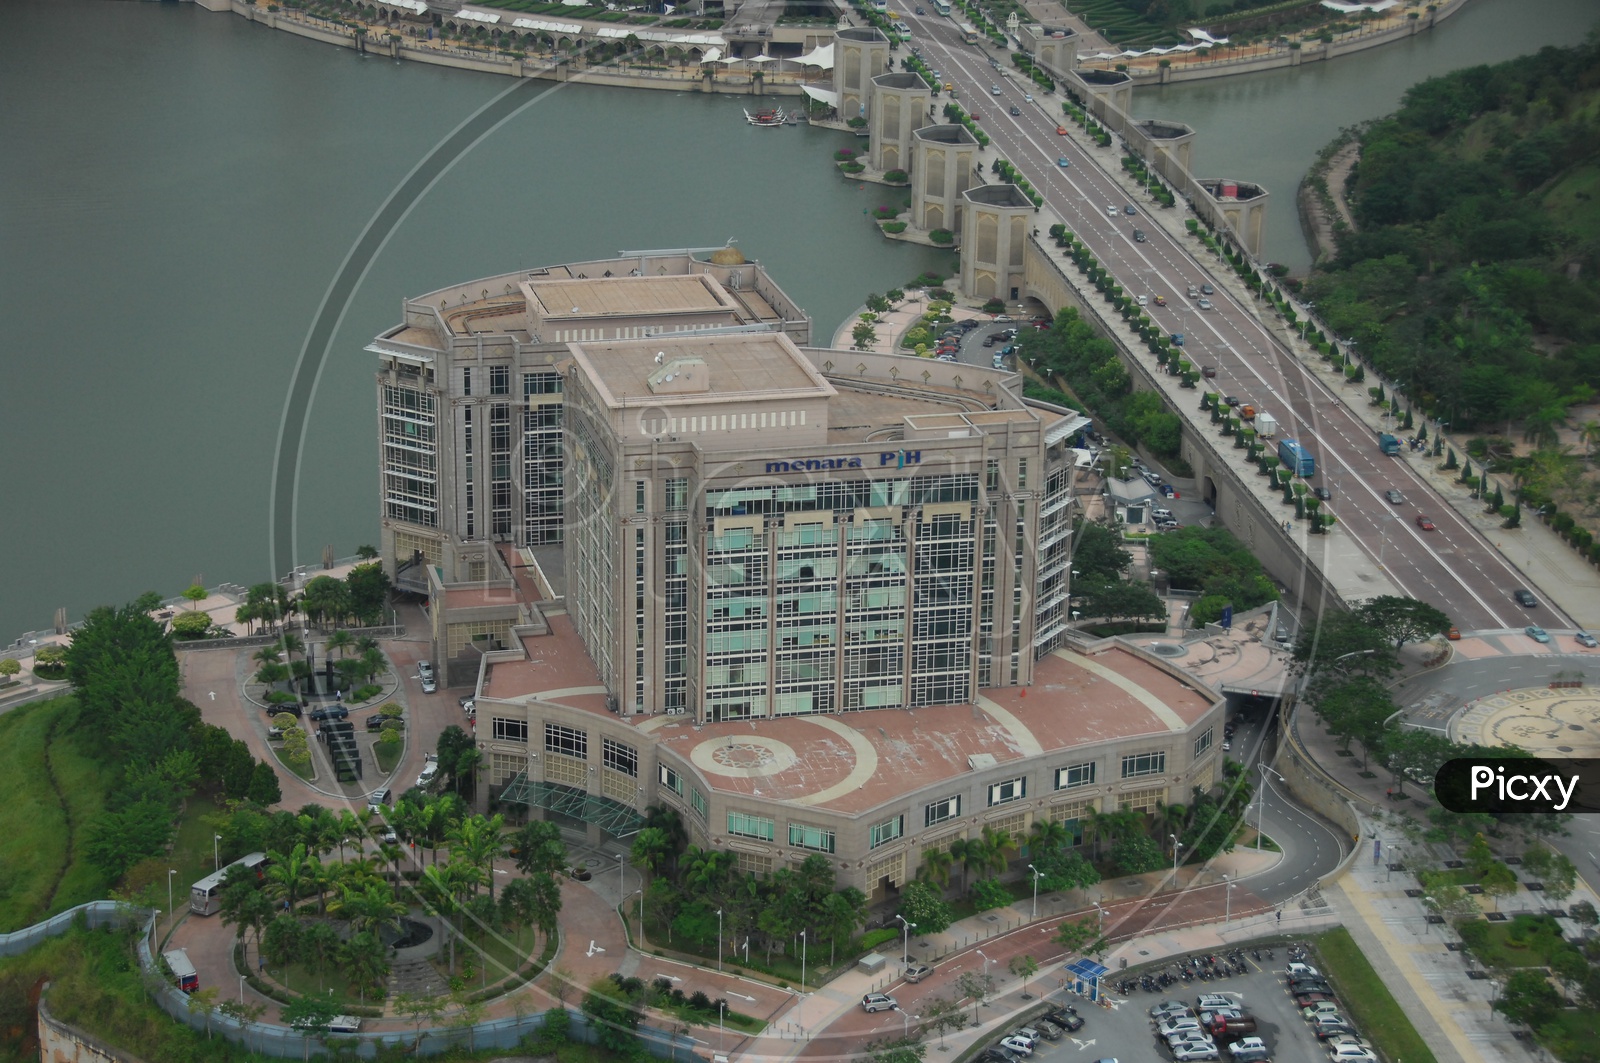 Menara PJH Building in Aerial View